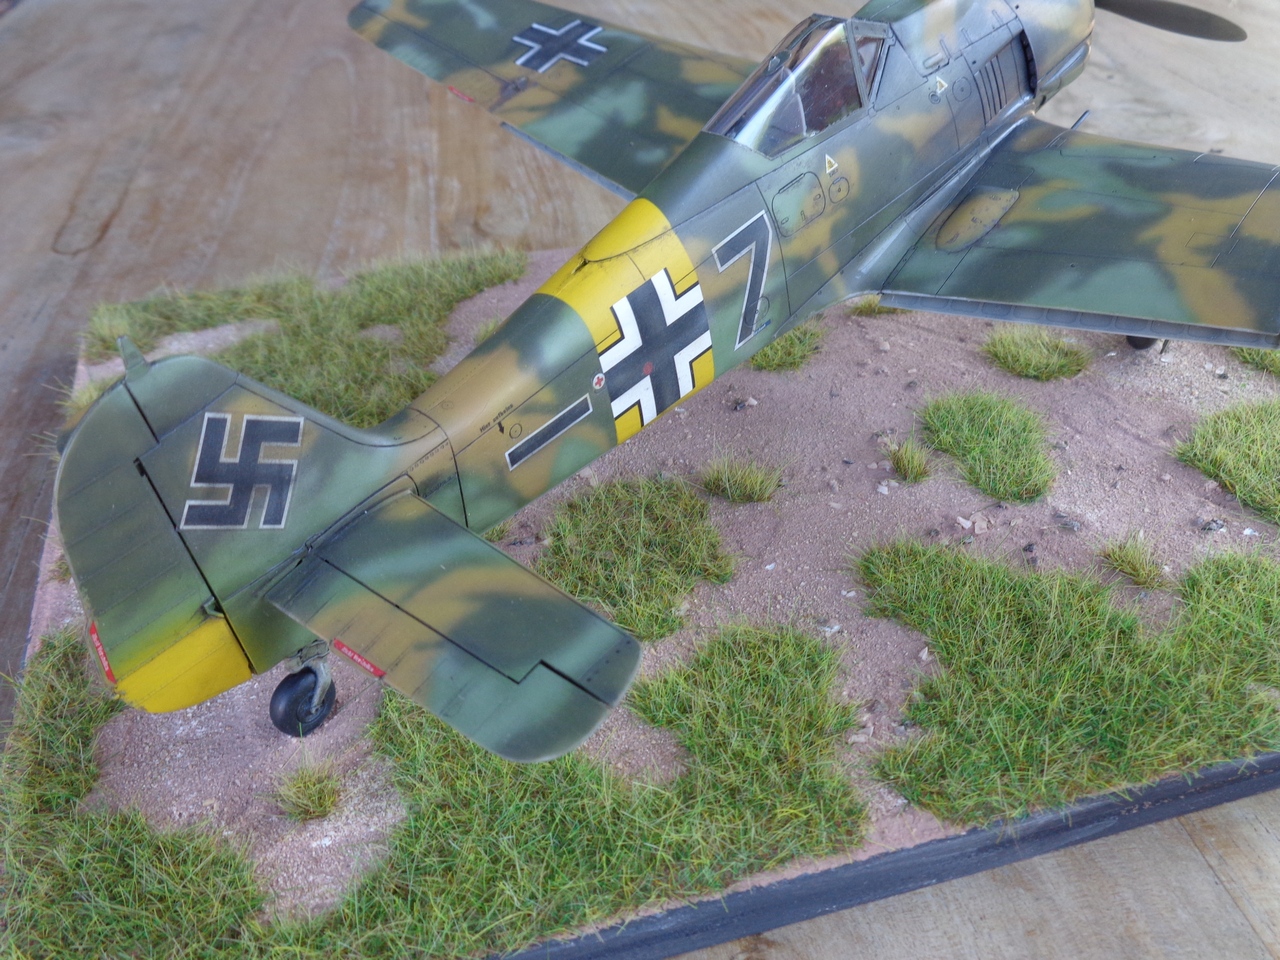 FW 190A - Emil Lang Russie 1943 - 5./JG 54 - Hasegawa - 1/32 5qJSJb-DSC01459